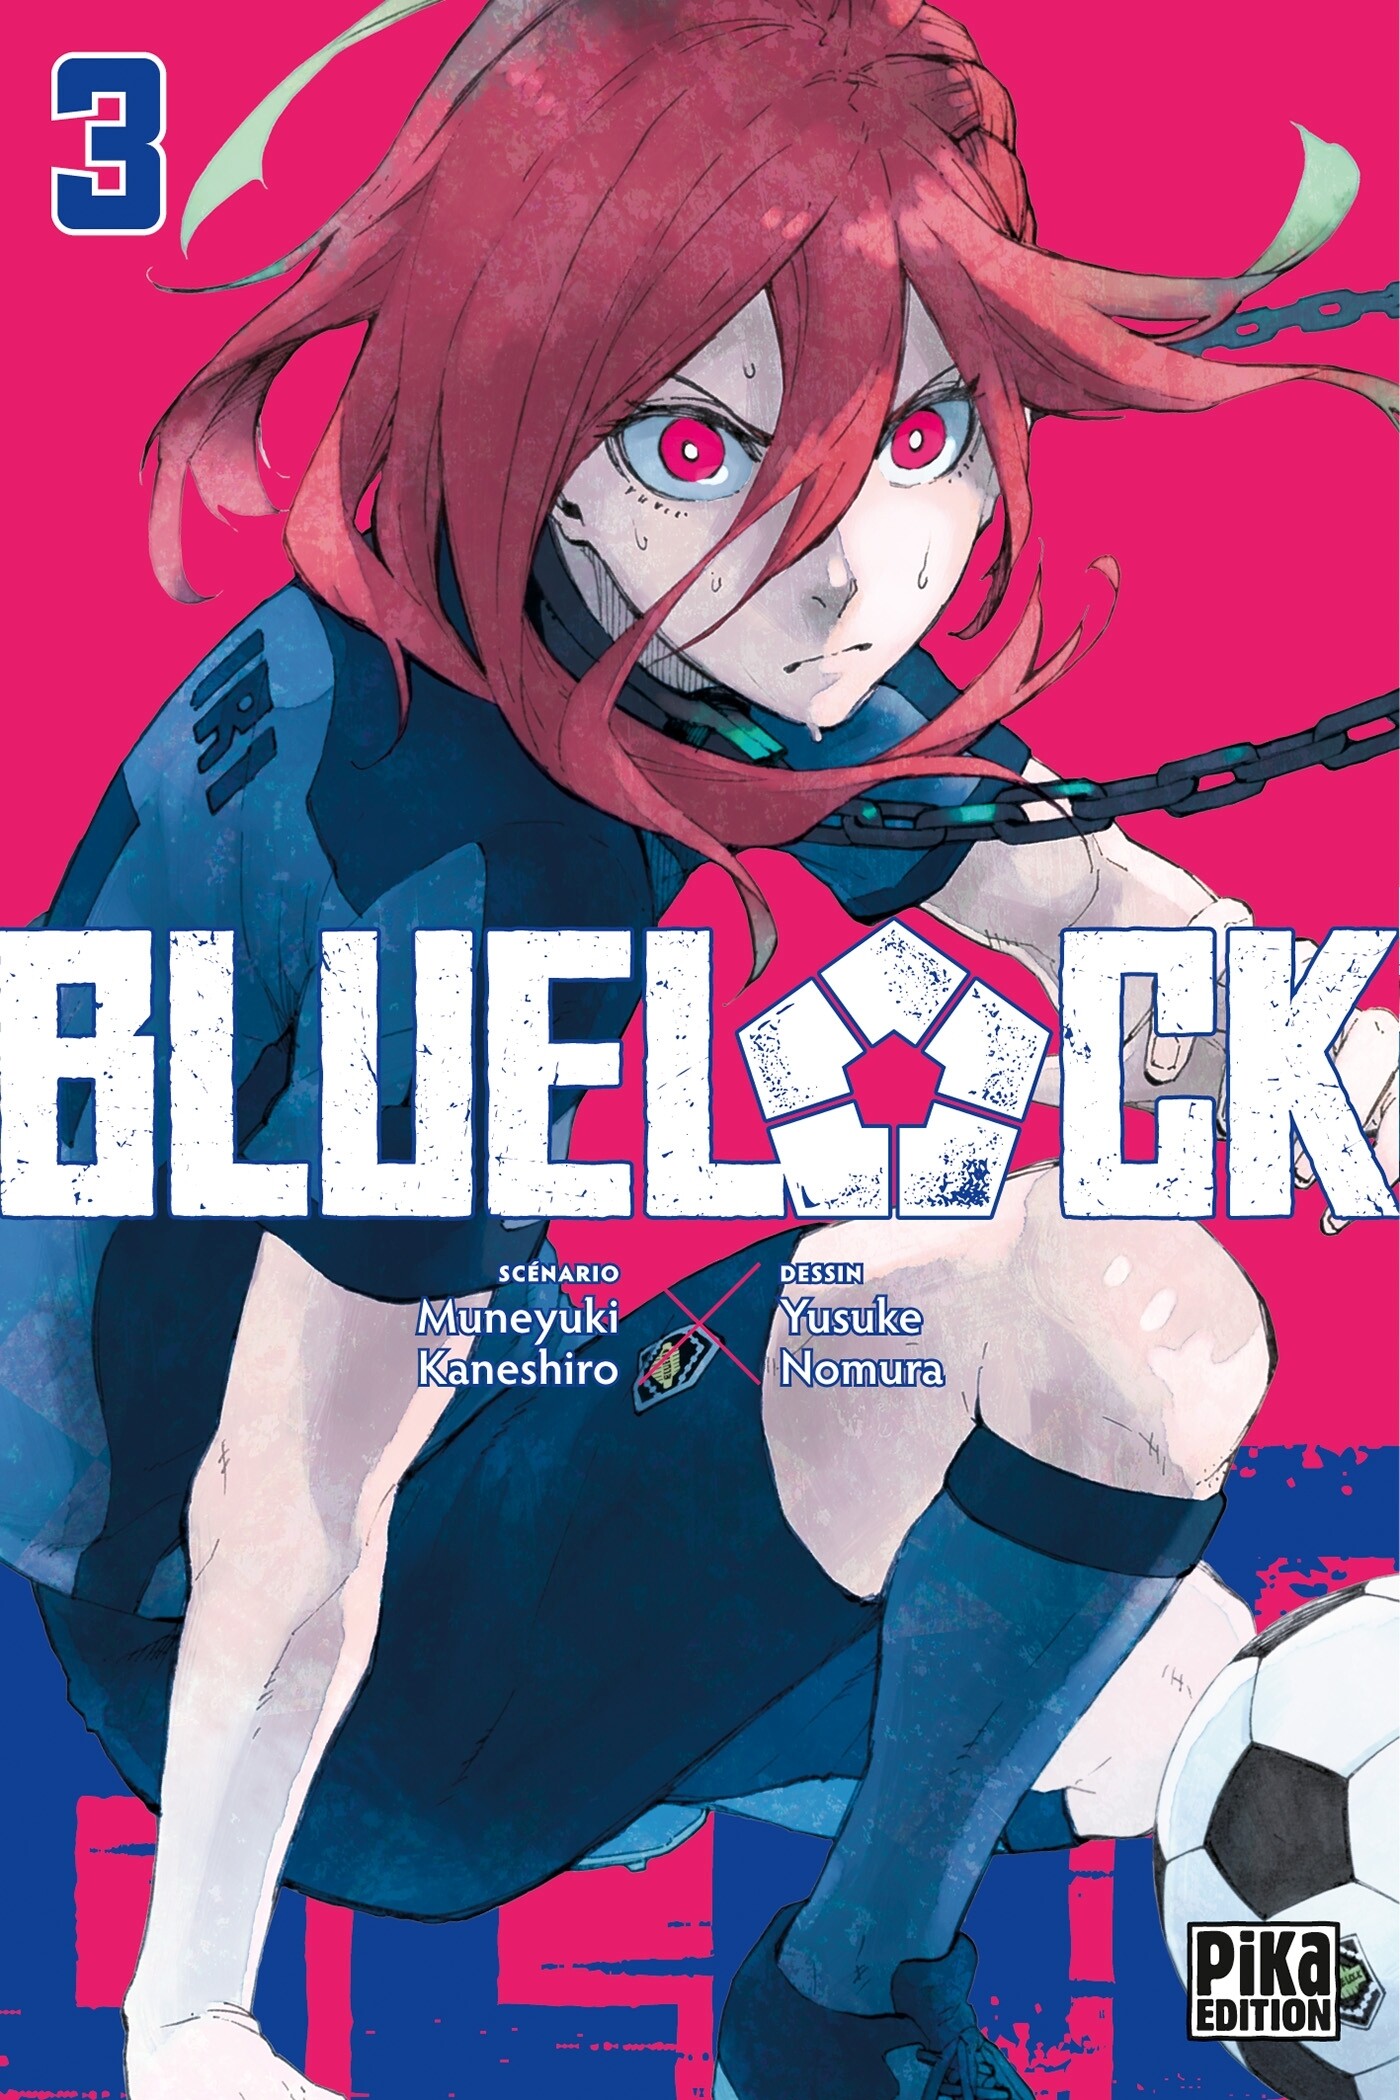 BLUE LOCK t.1-18 (Muneyuki Kaneshiro / Yûsuke Nomura) - Pika - Sanctuary